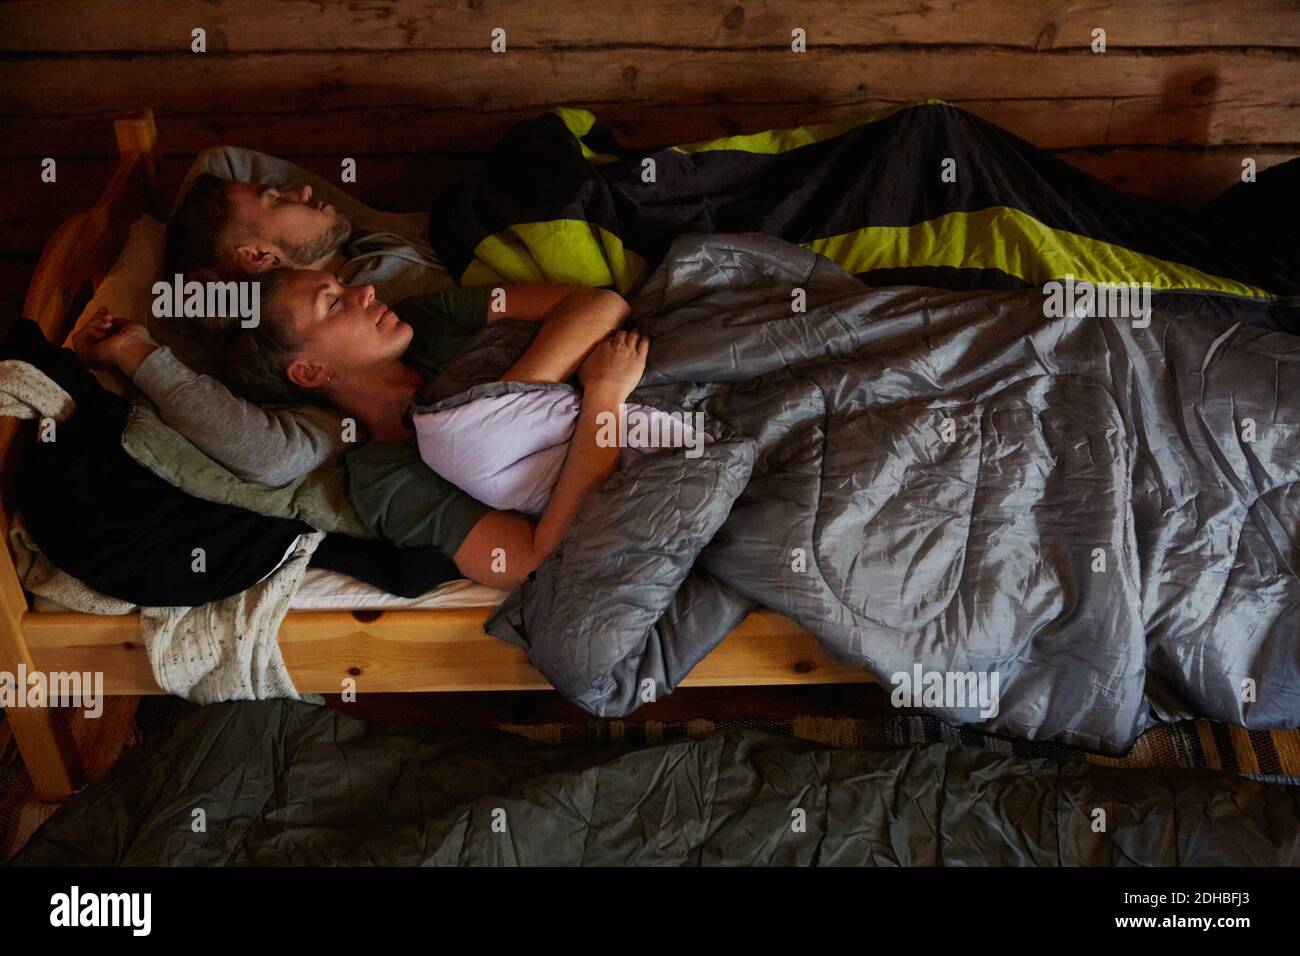 Vue en grand angle de couple avec couvertures dormant sur le lit dans la cabine en rondins Banque D'Images